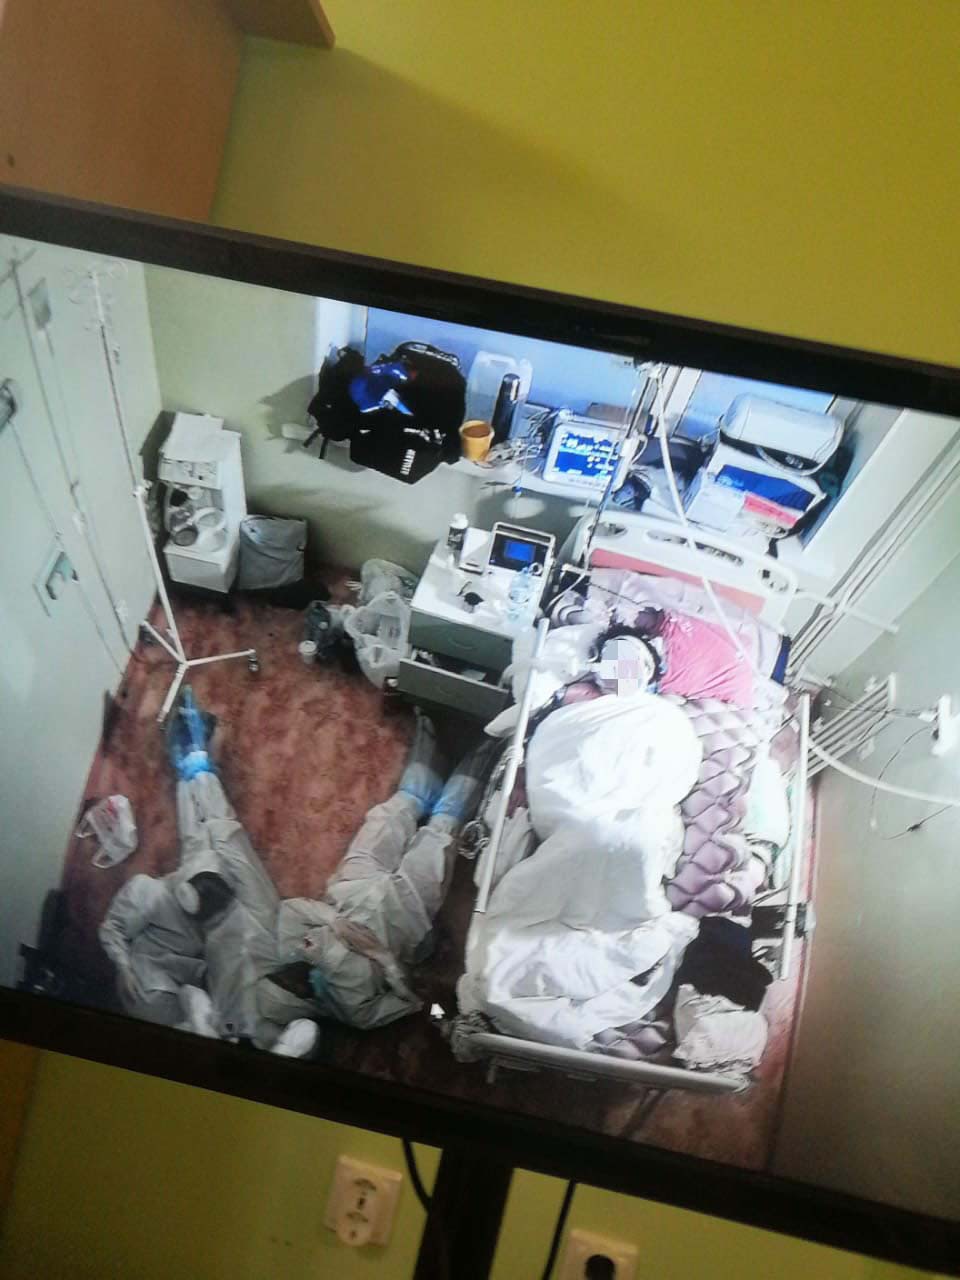 На полу у кровати тяжелого больного коронавирусом. Что запечатлела камера